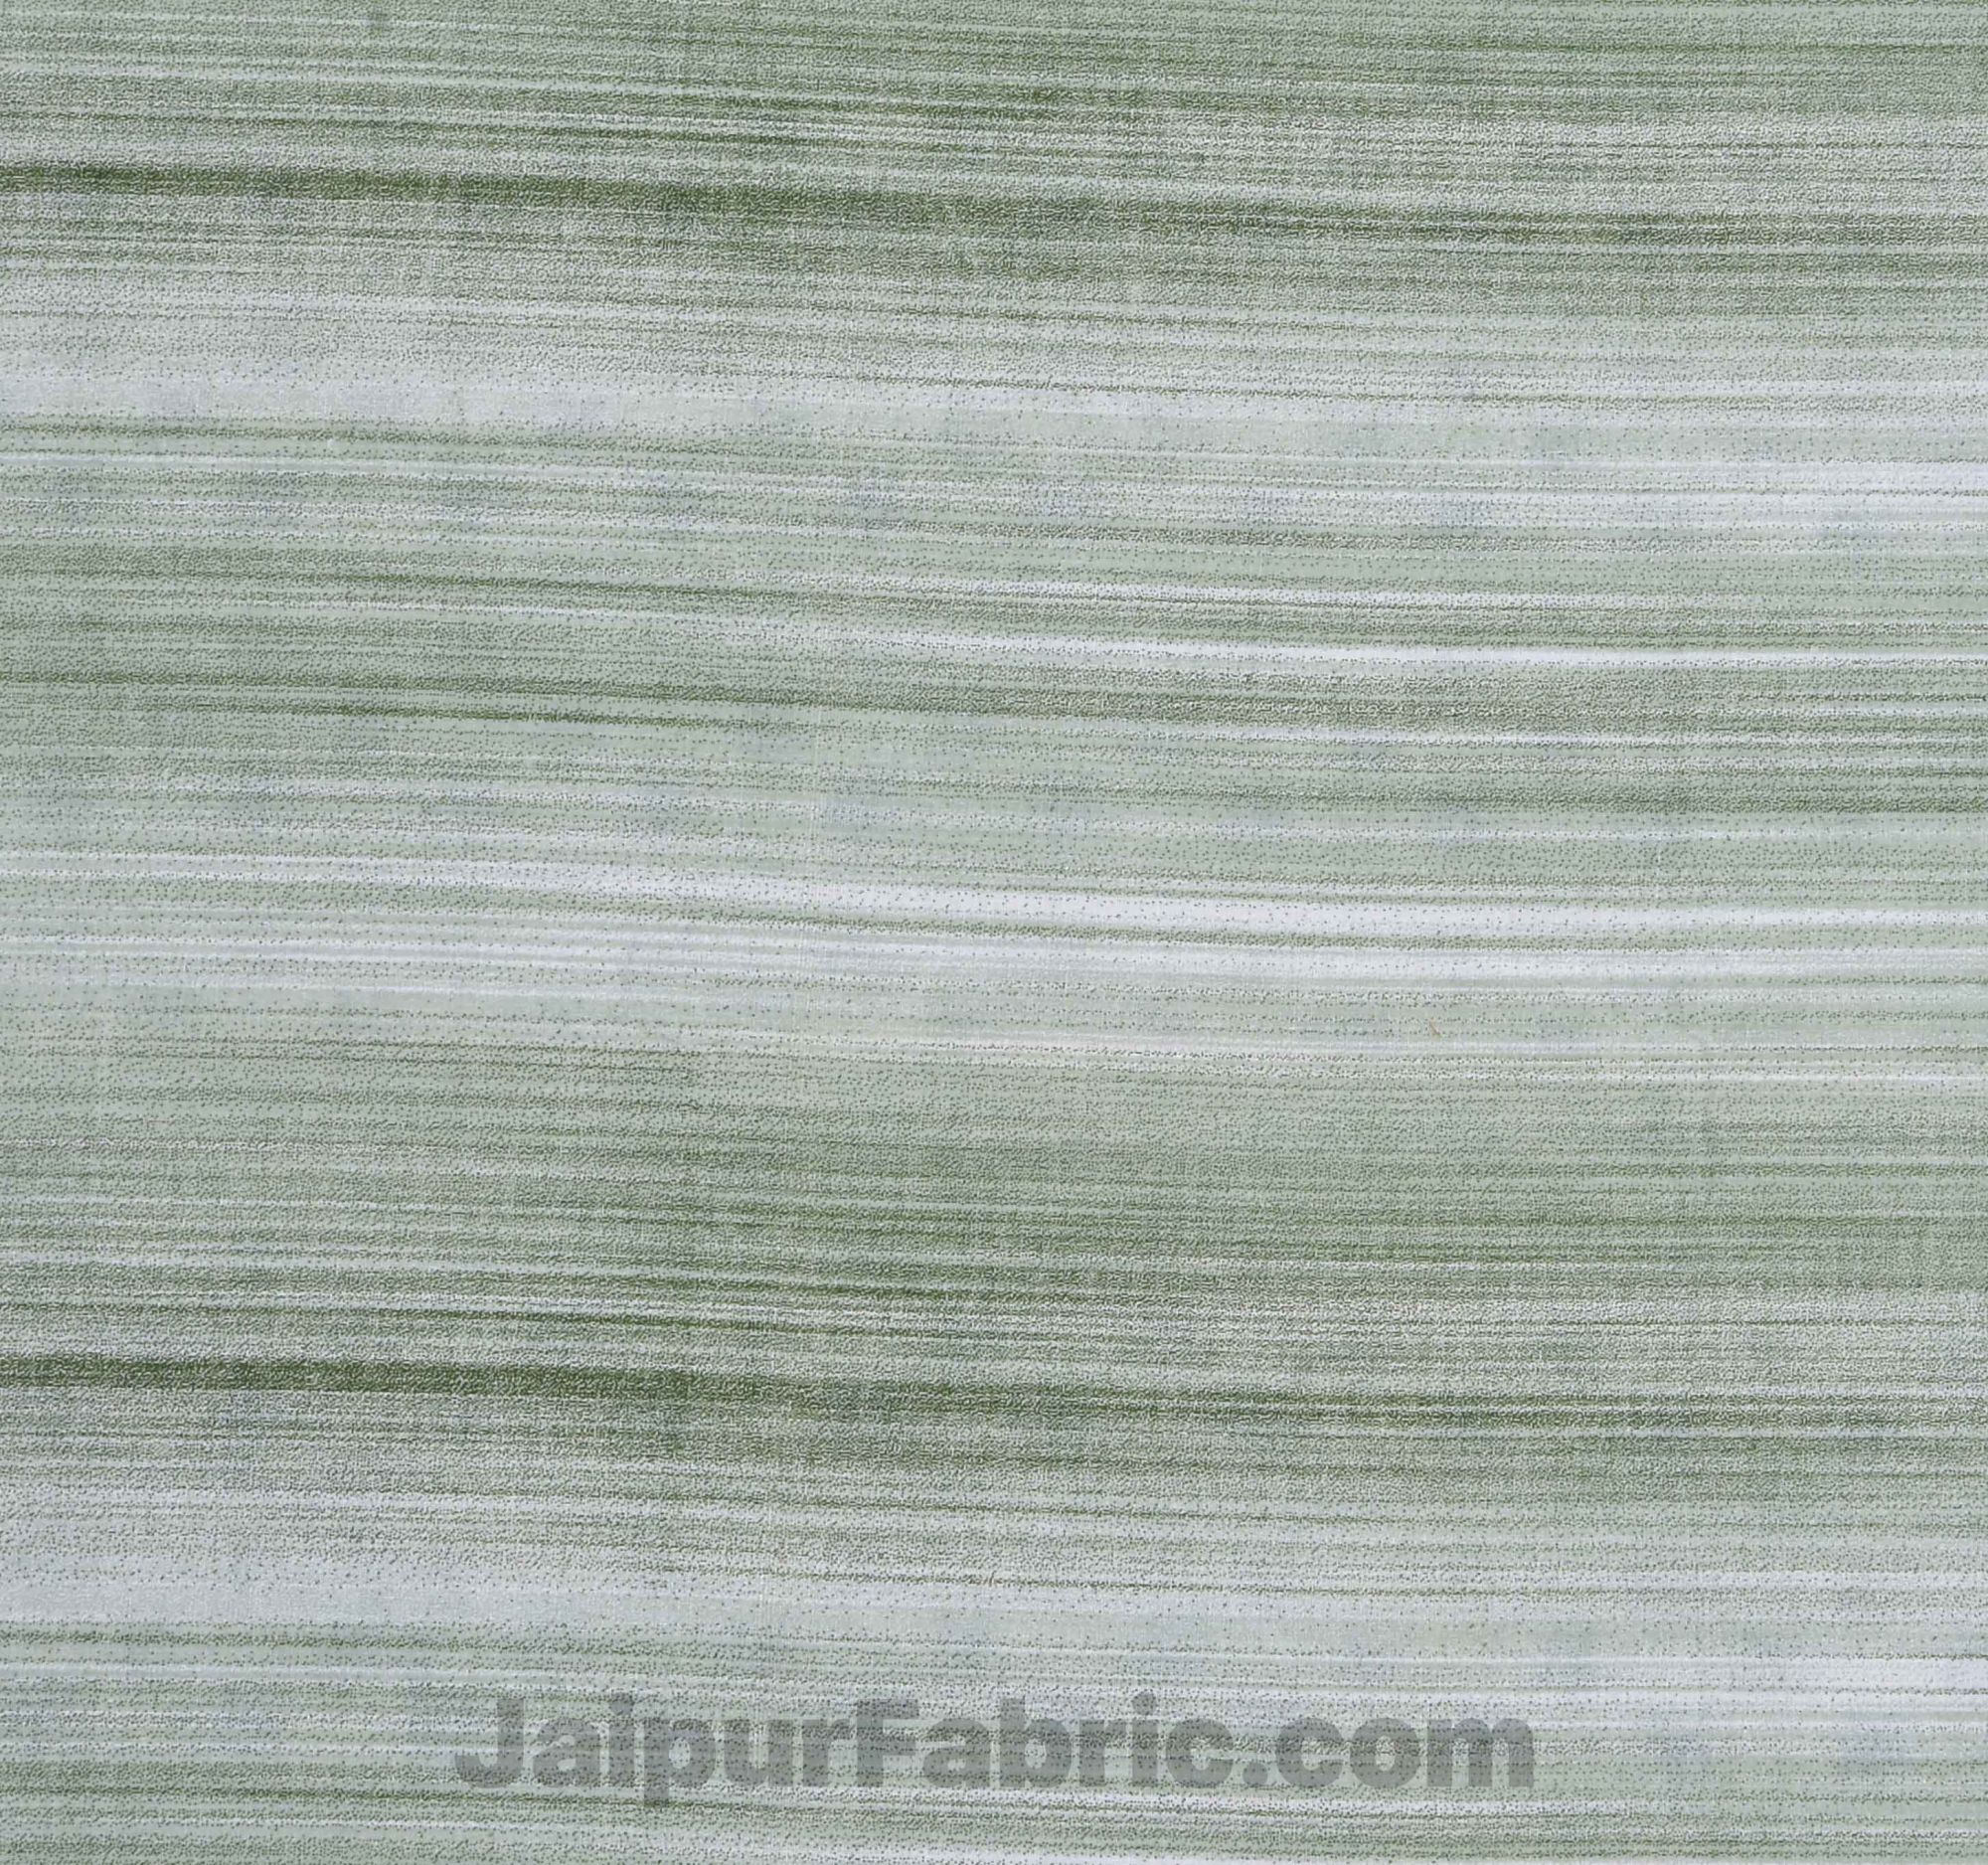 Pure Cotton Multi Lime Green Star Reversible Single Blanket/Duvet/Quilt/AC Dohar